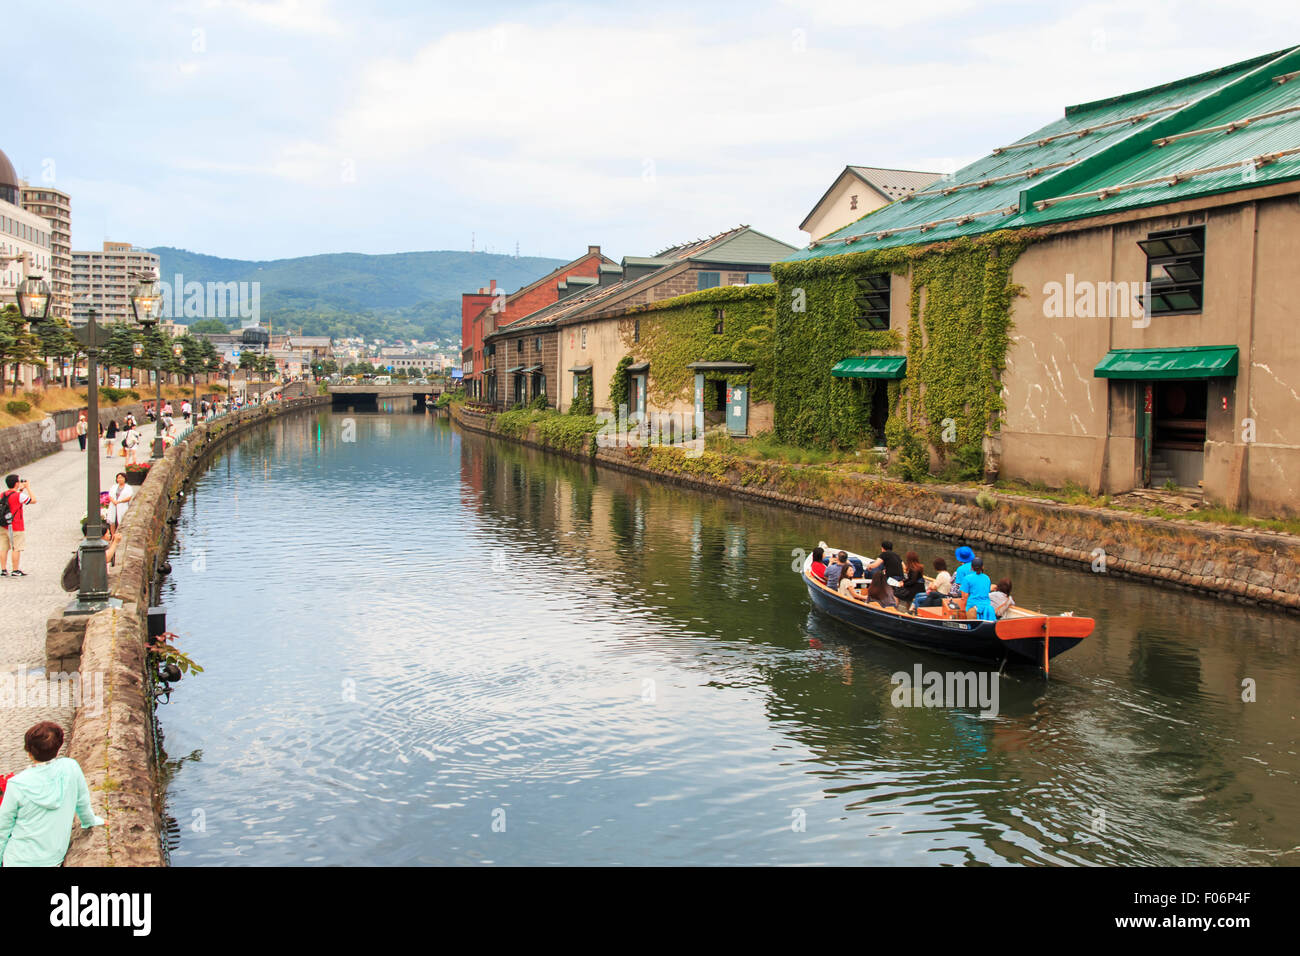 Otaru, Hokkaido - Juillet 13,2015 : Otaru, canal historique et warehousedistrict à Hokkaido, au Japon, avec de nombreux touristes marcher par Banque D'Images